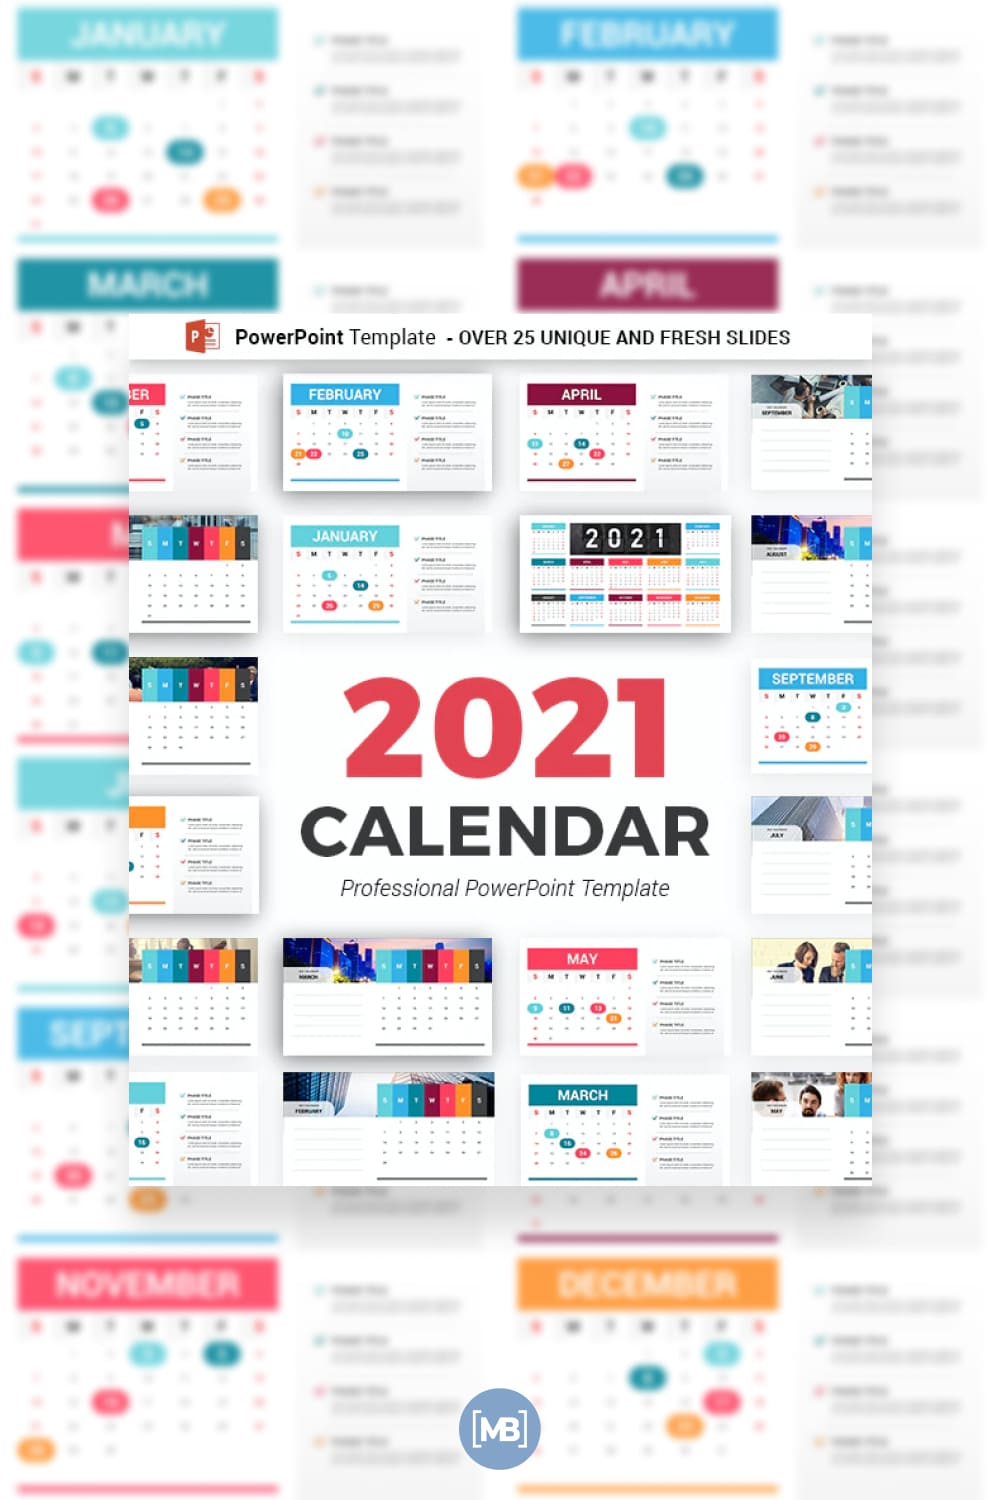 Calendar 2021 powerpoint template.